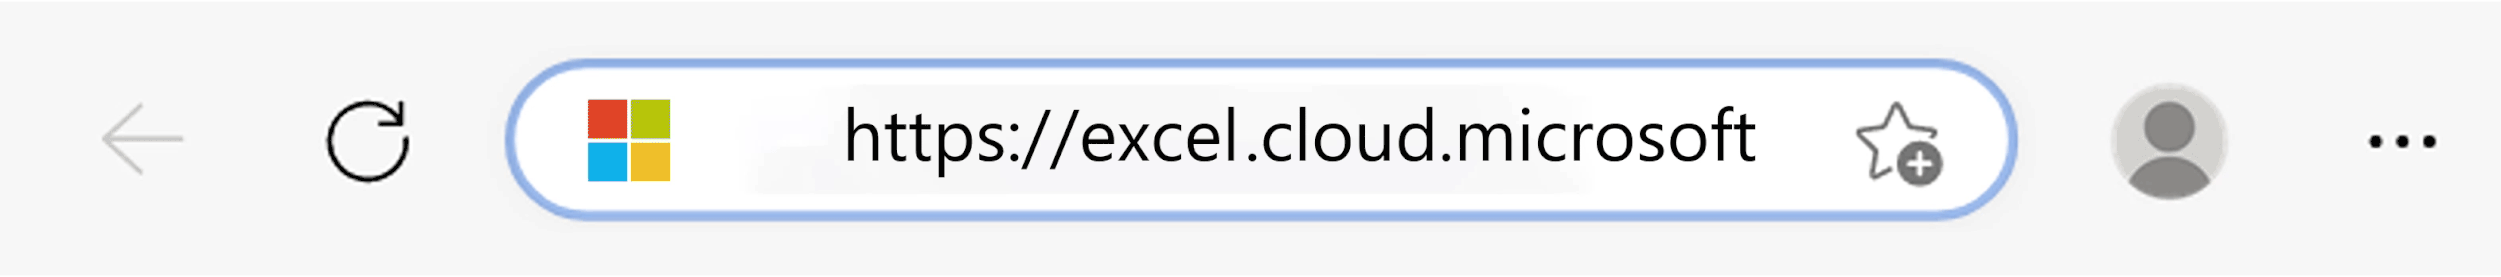 URL di cloudmicrosoft